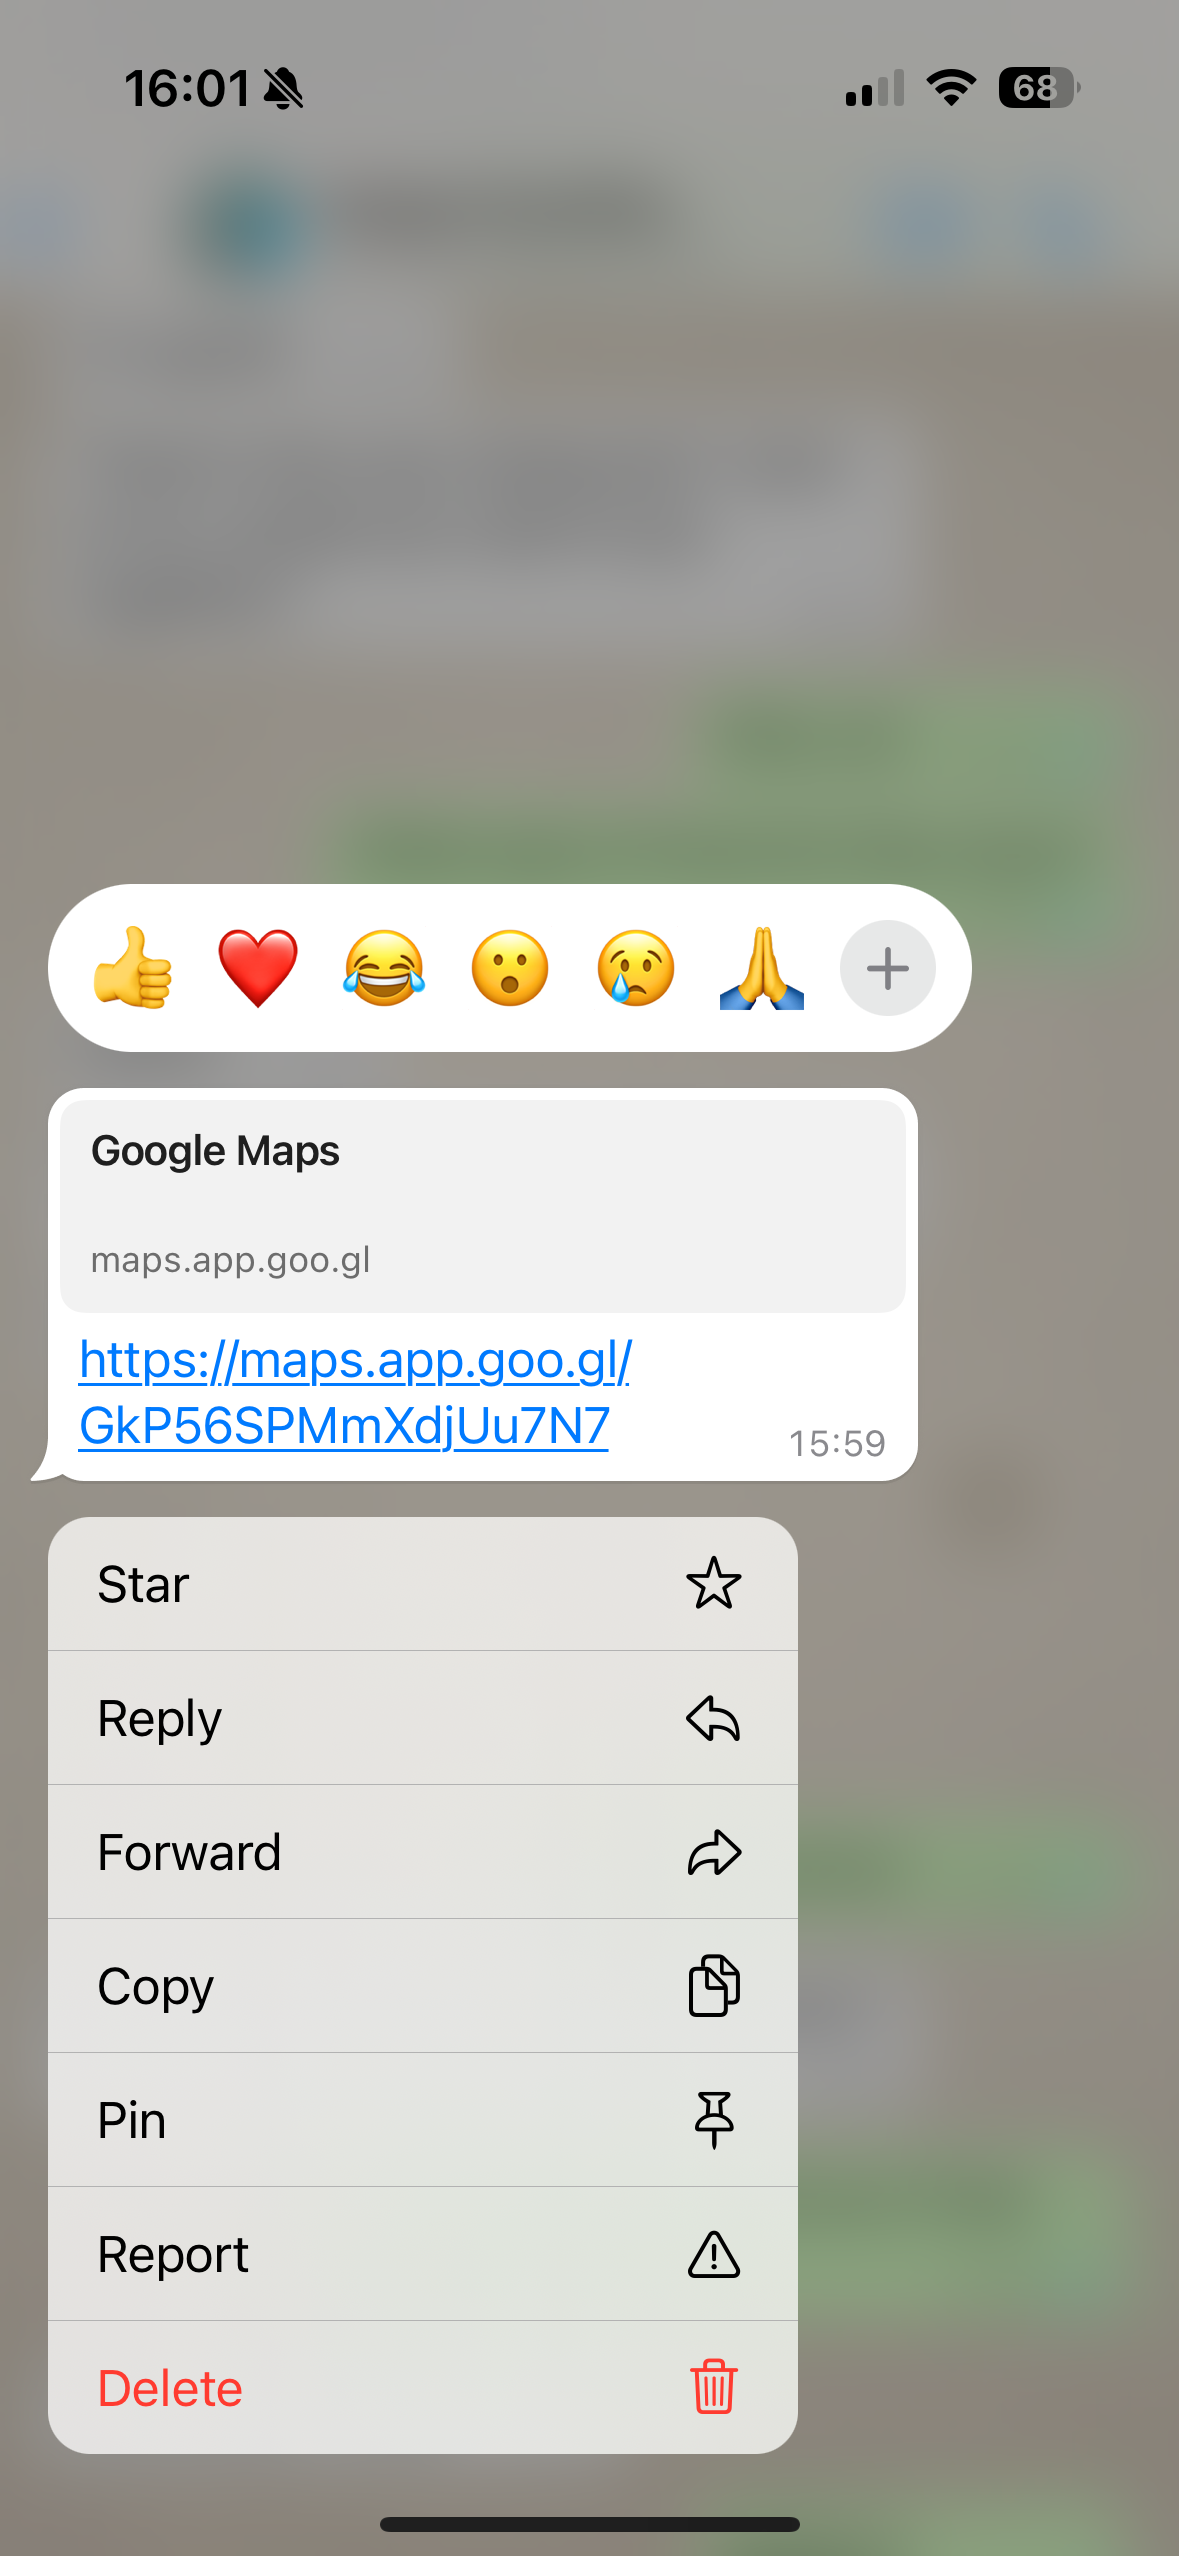 Captura de tela do aplicativo WhatsApp no ​​iPhone mostrando as opções de mensagens